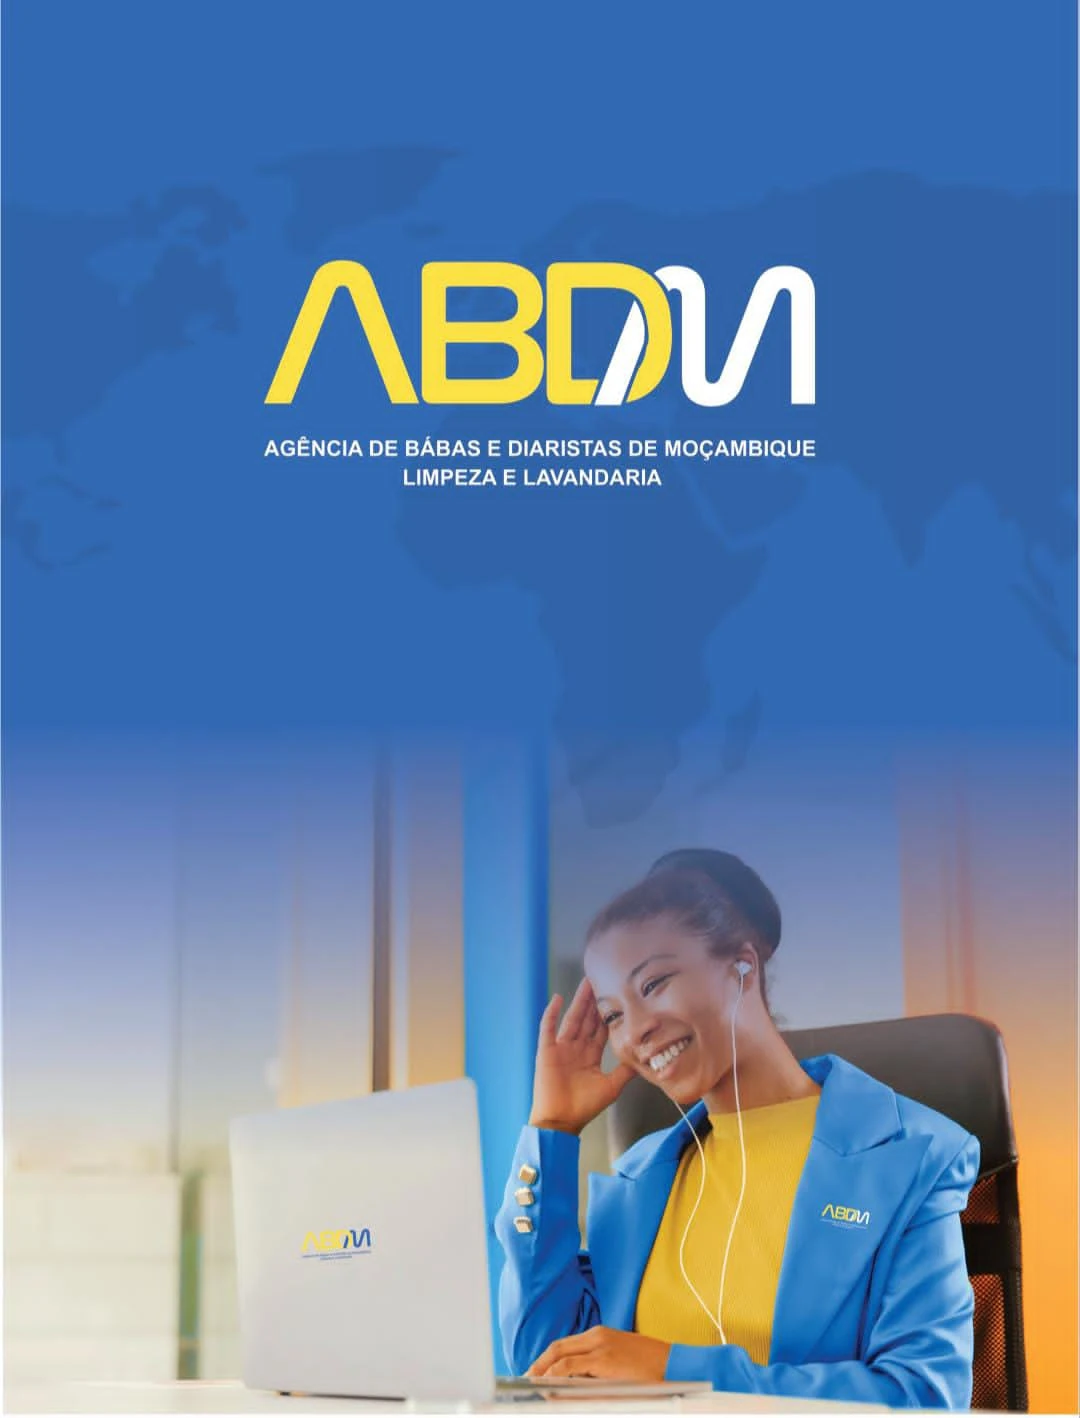 ABDM- Agencia de Babas e Diaristas de Moçambique